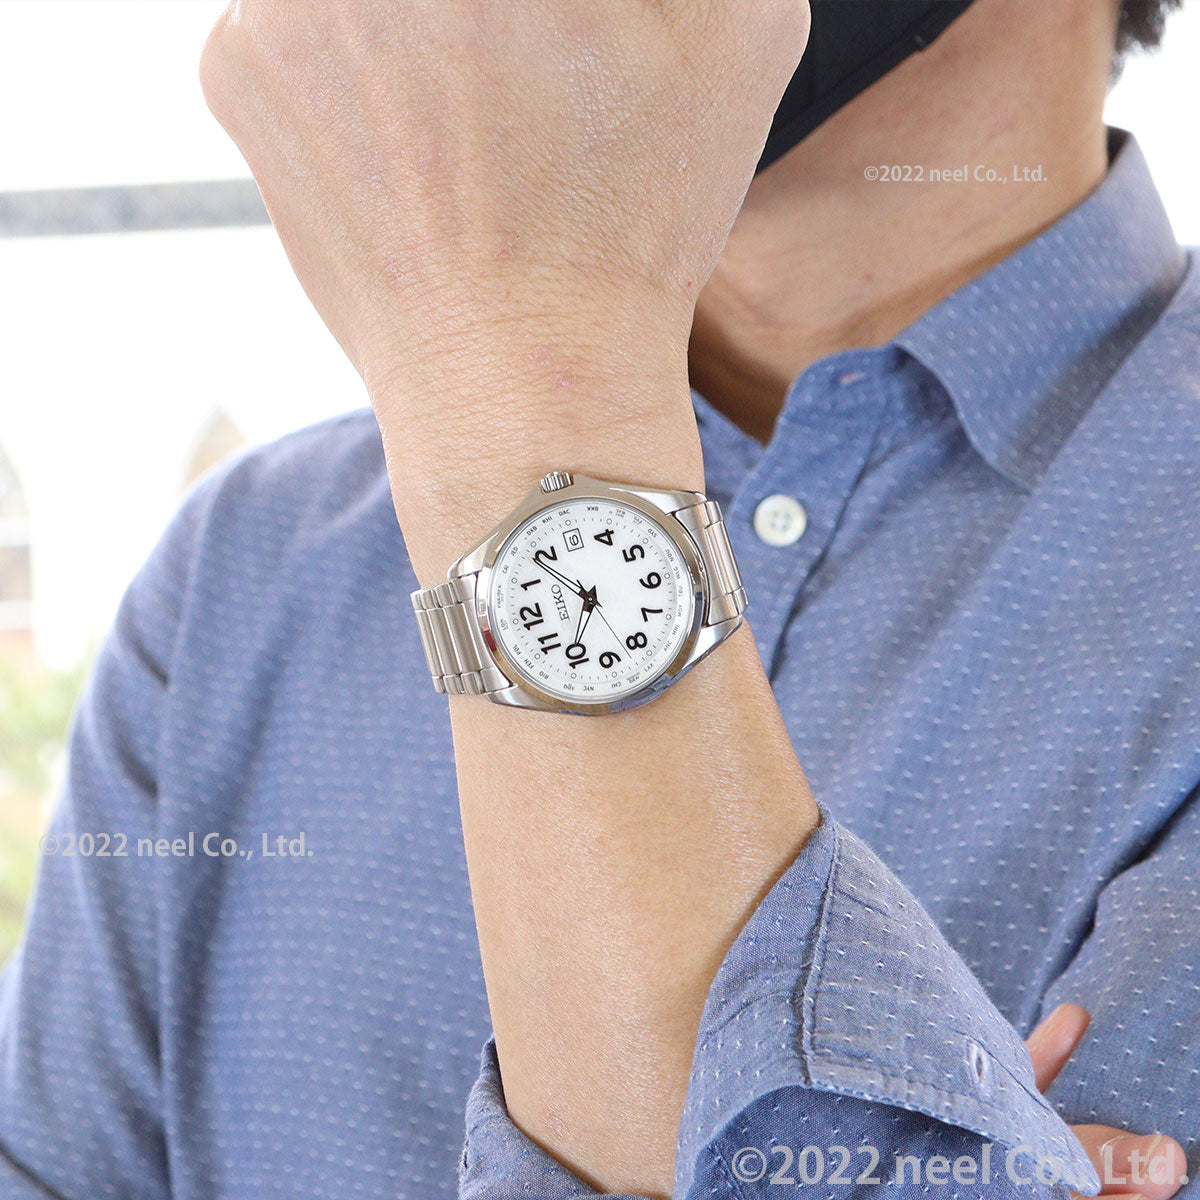 セイコー セレクション SEIKO SELECTION 電波 ソーラー 電波時計 腕時計 メンズ アラビア数字 ワールドタイム チタン SBTM327